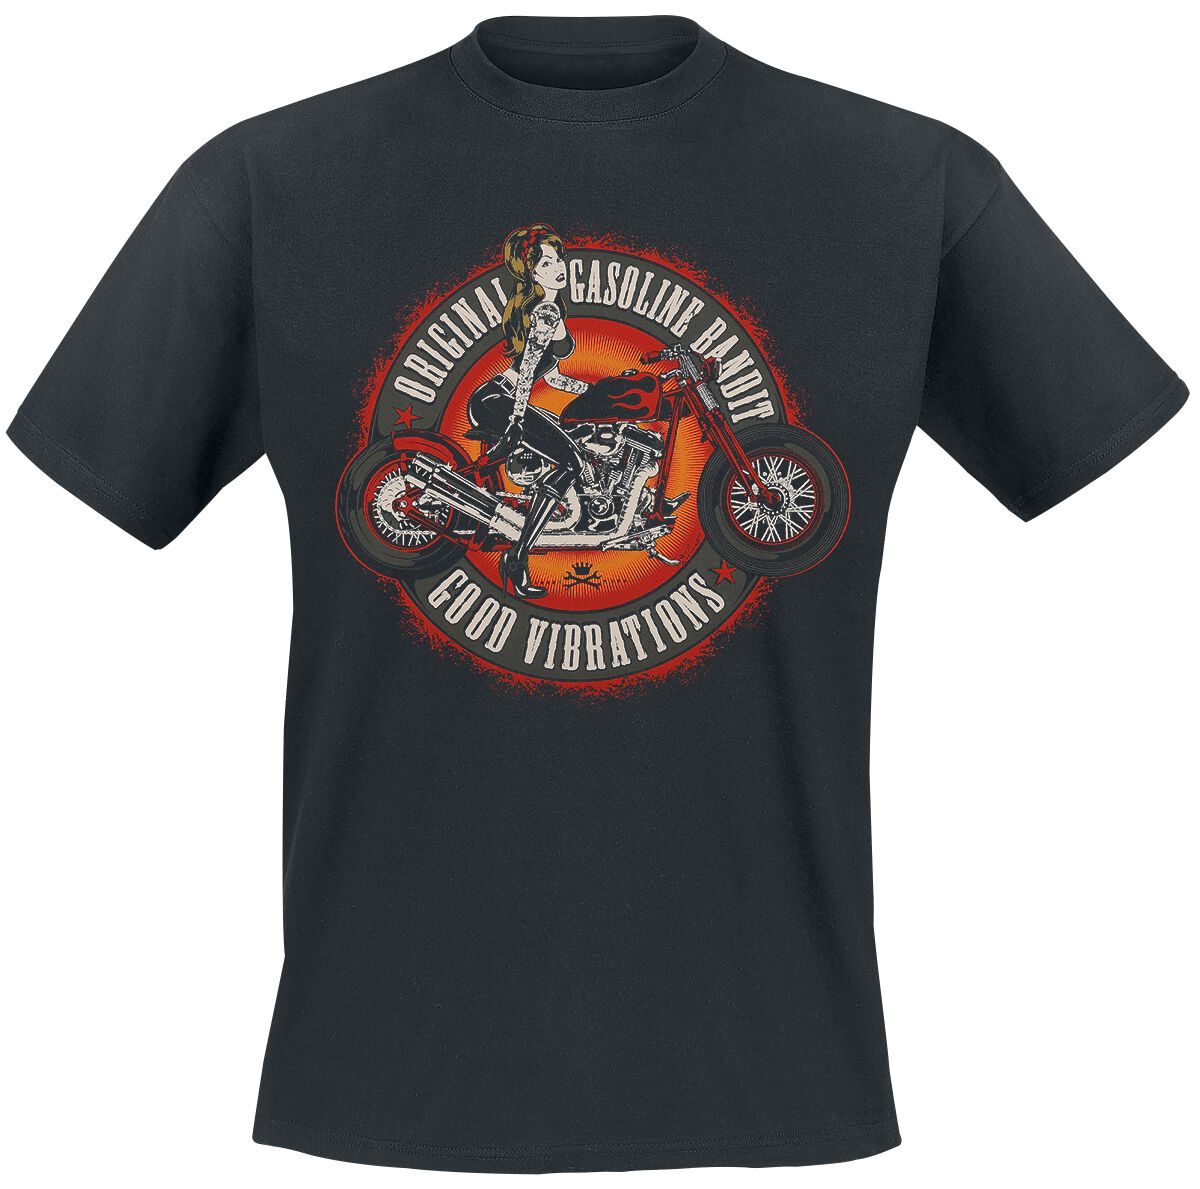 Gasoline Bandit - Rockabilly T-Shirt - Good Vibrations - S bis 3XL - für Männer - Größe S - schwarz